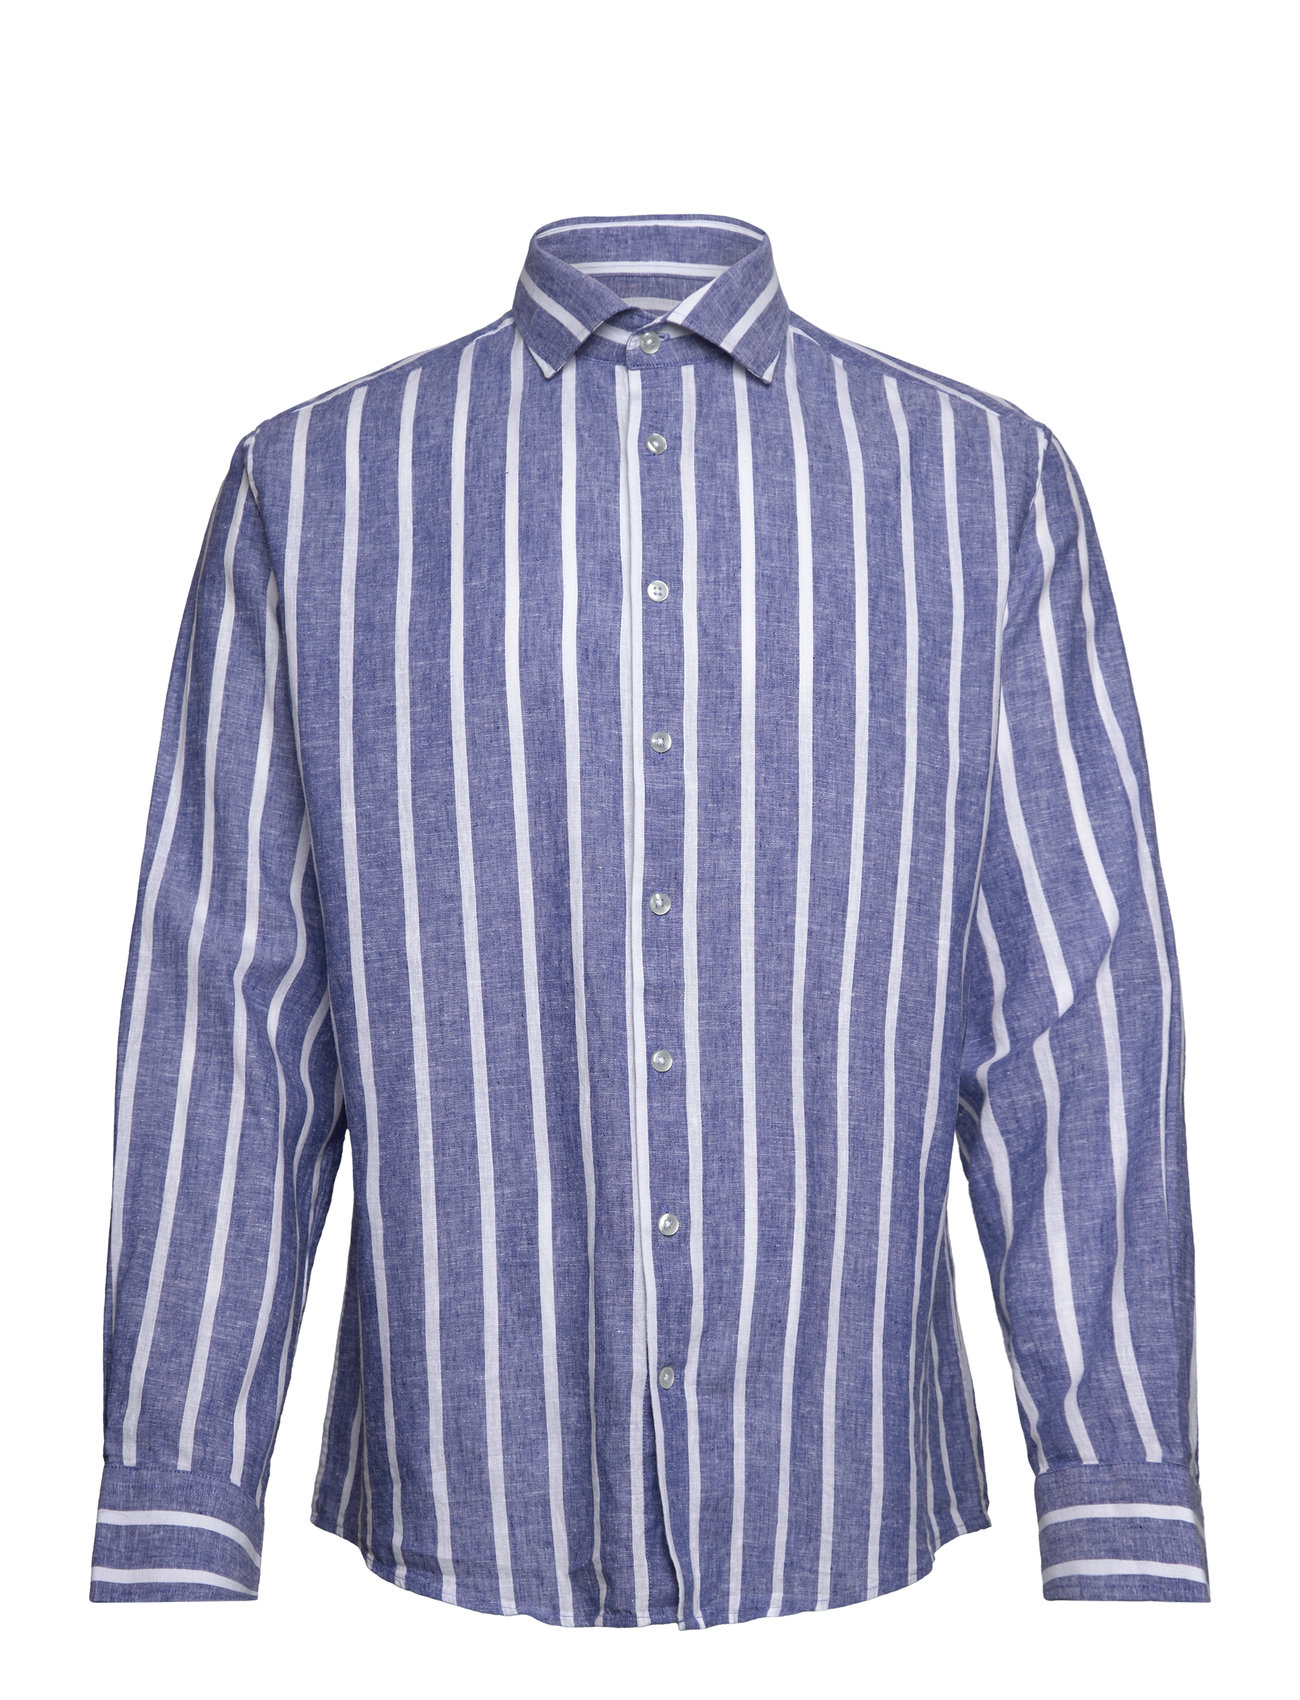 Bs Deacon Casual Modern Fit Shirt Tops Shirts Linen Shirts Blue Bruun & Stengade